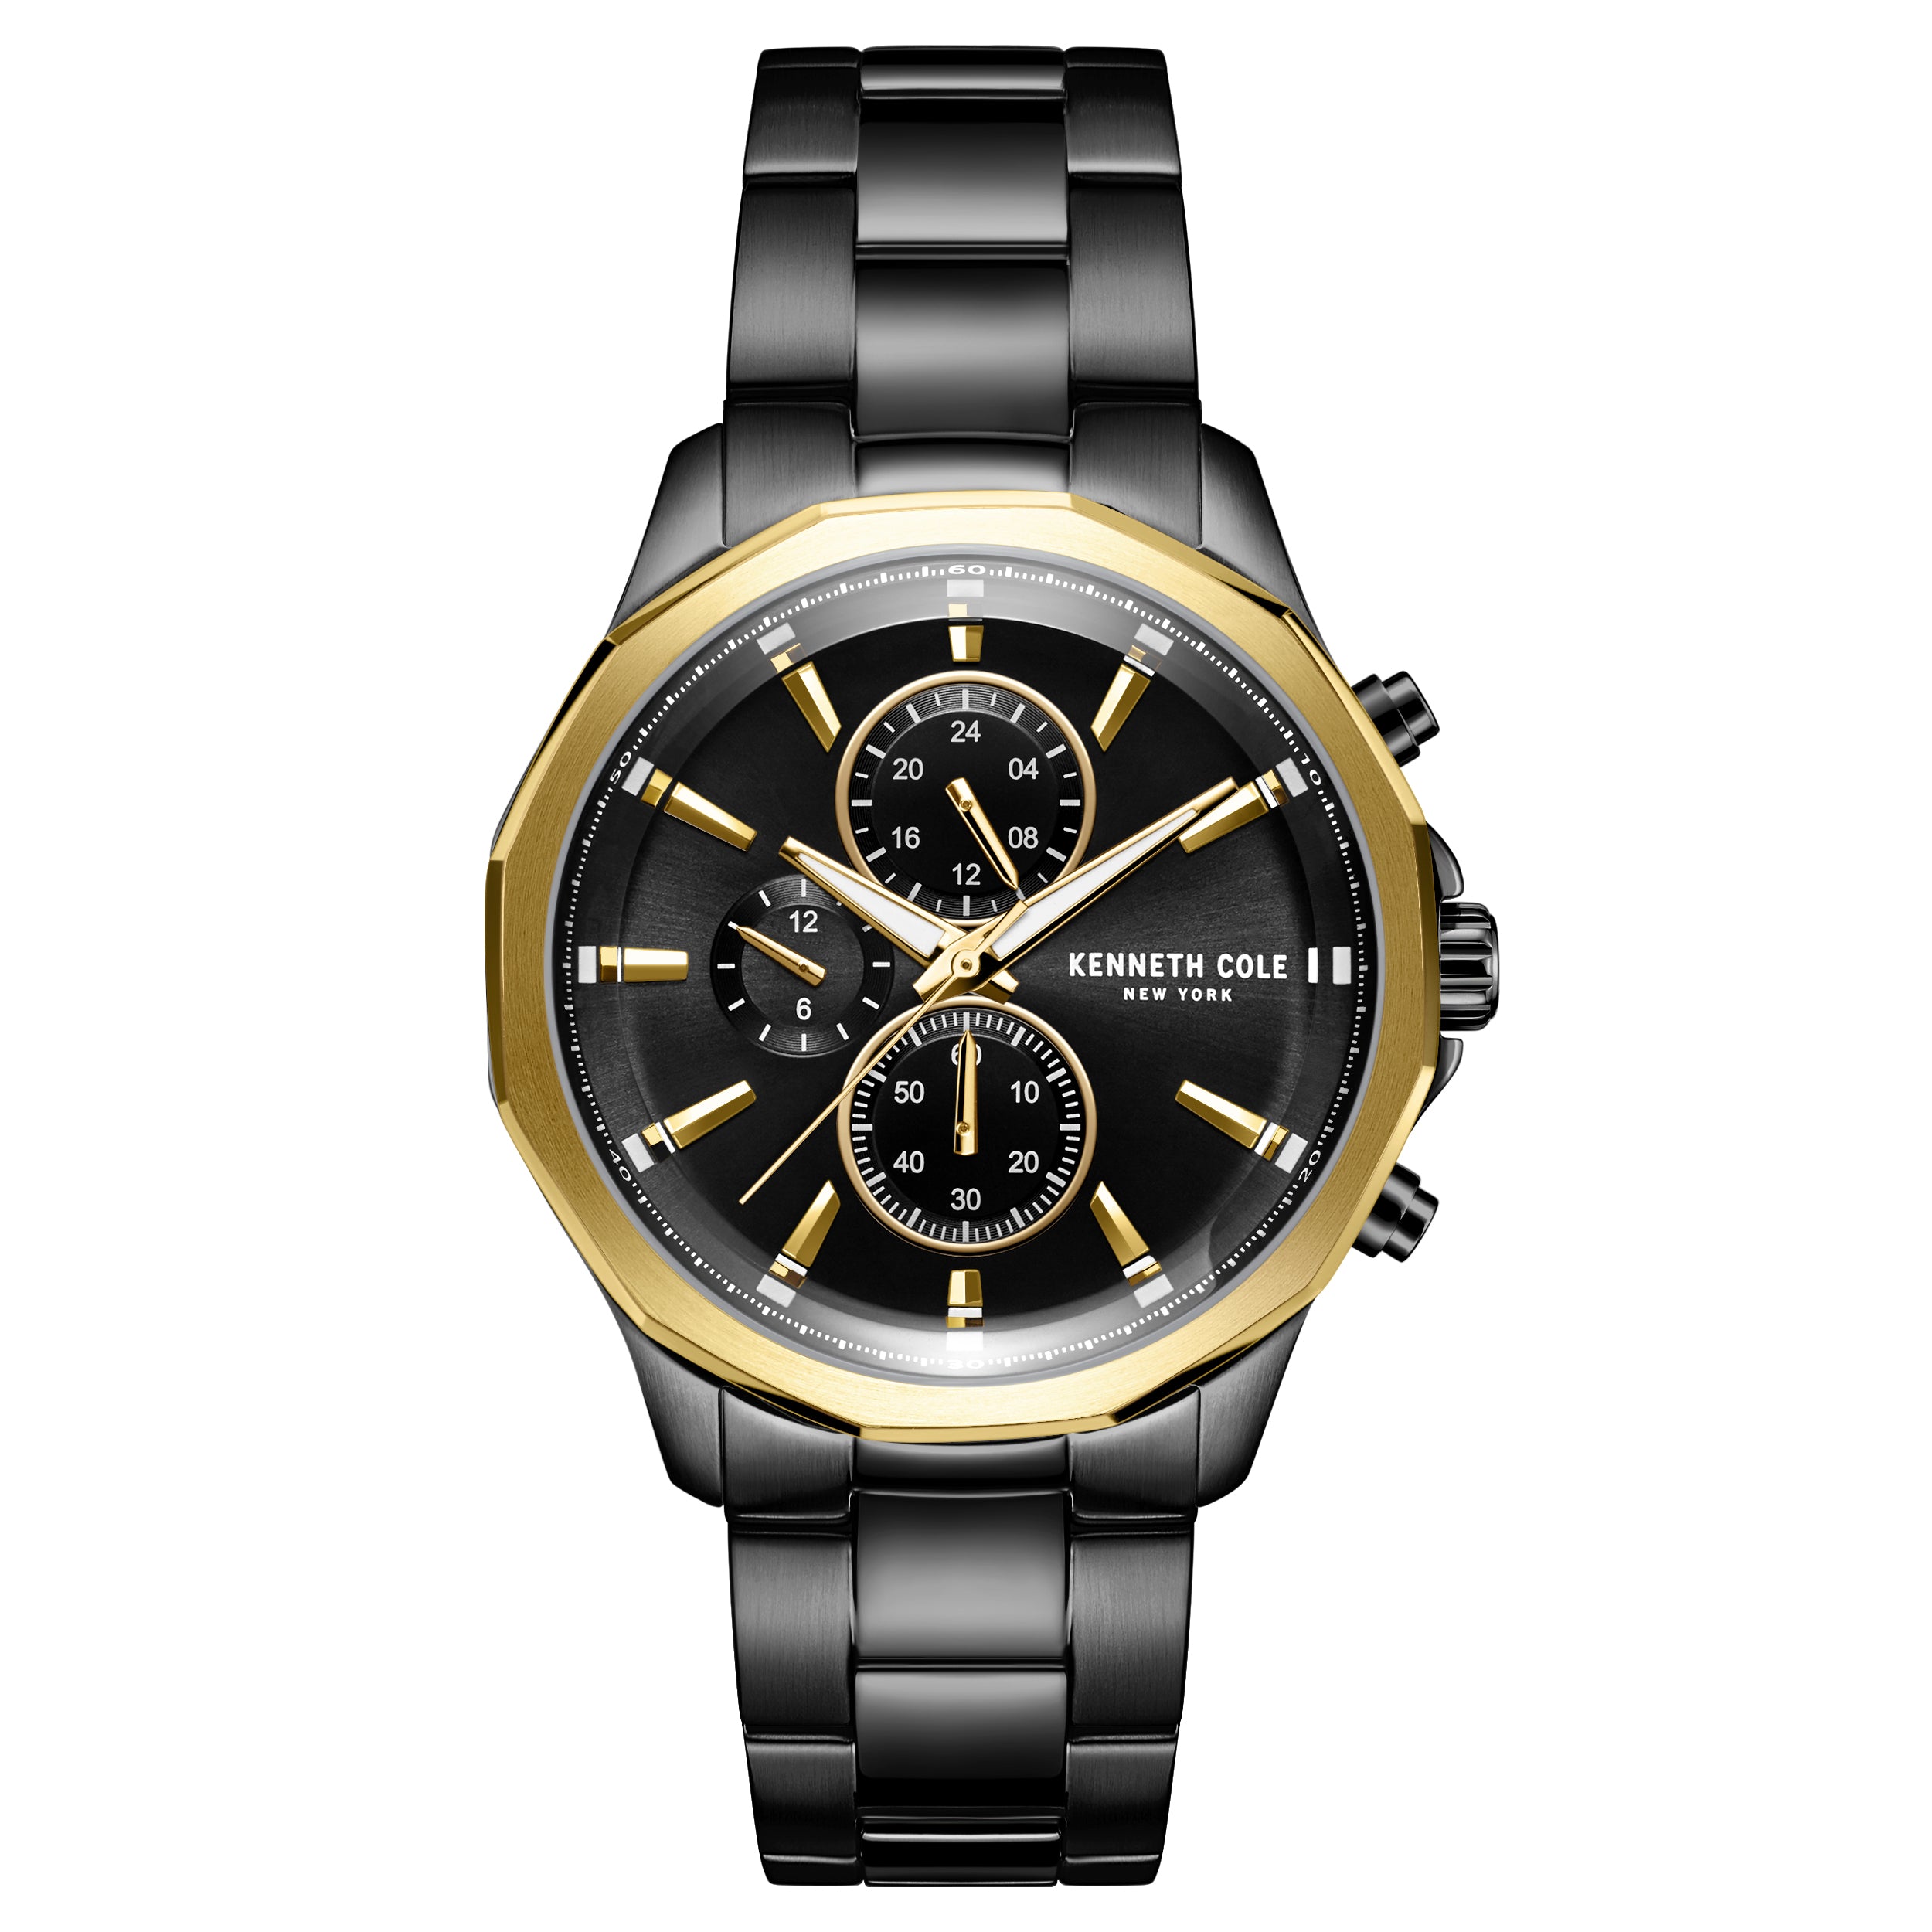 Kenneth Cole - Men's Dress Sport - Black & Gold Stainless Steel Bracelet Watch